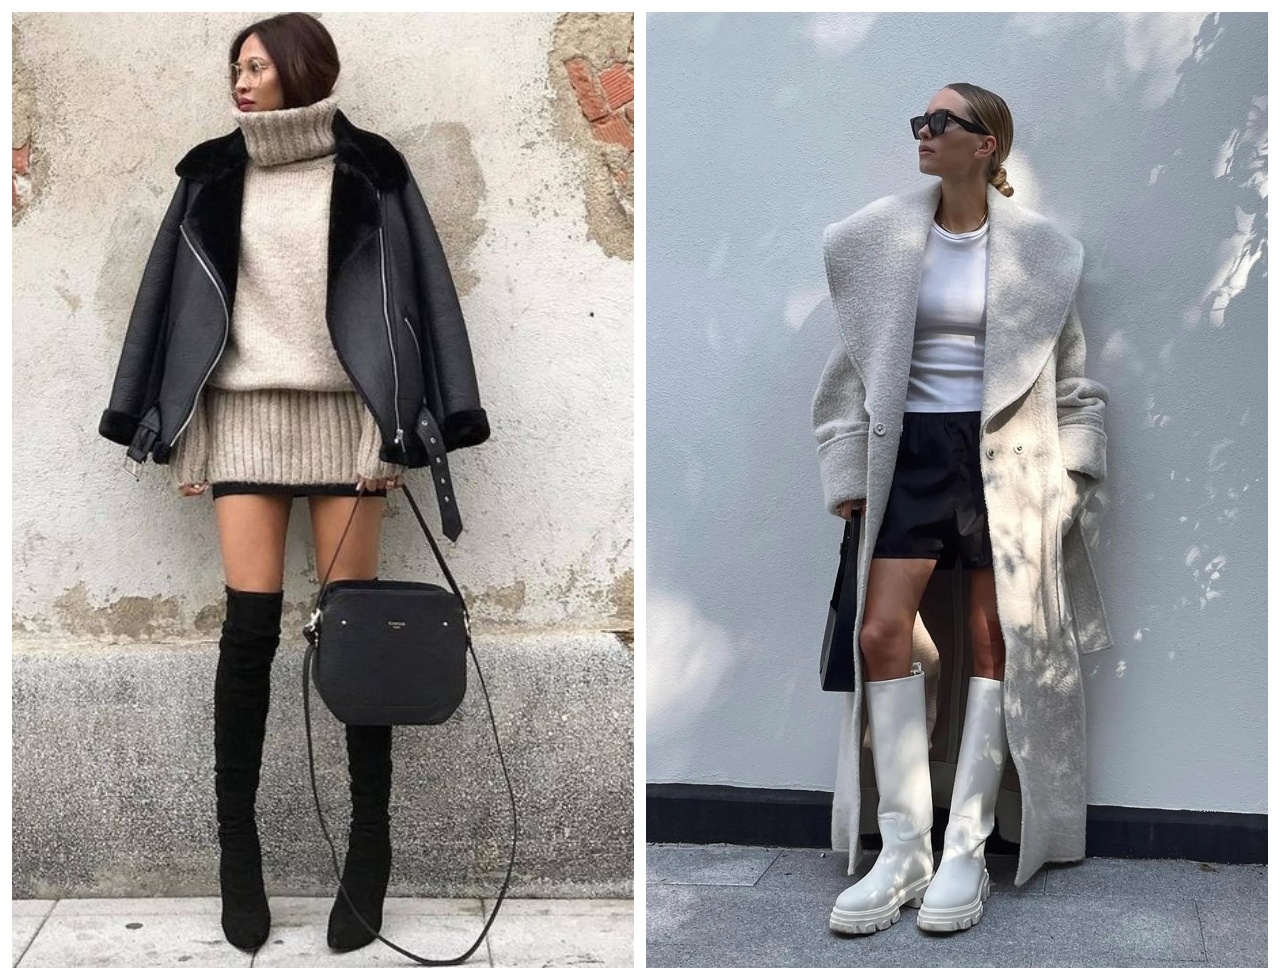 Модный вопрос: как и с чем носить юбку зимой? (ФОТО) - фото №1